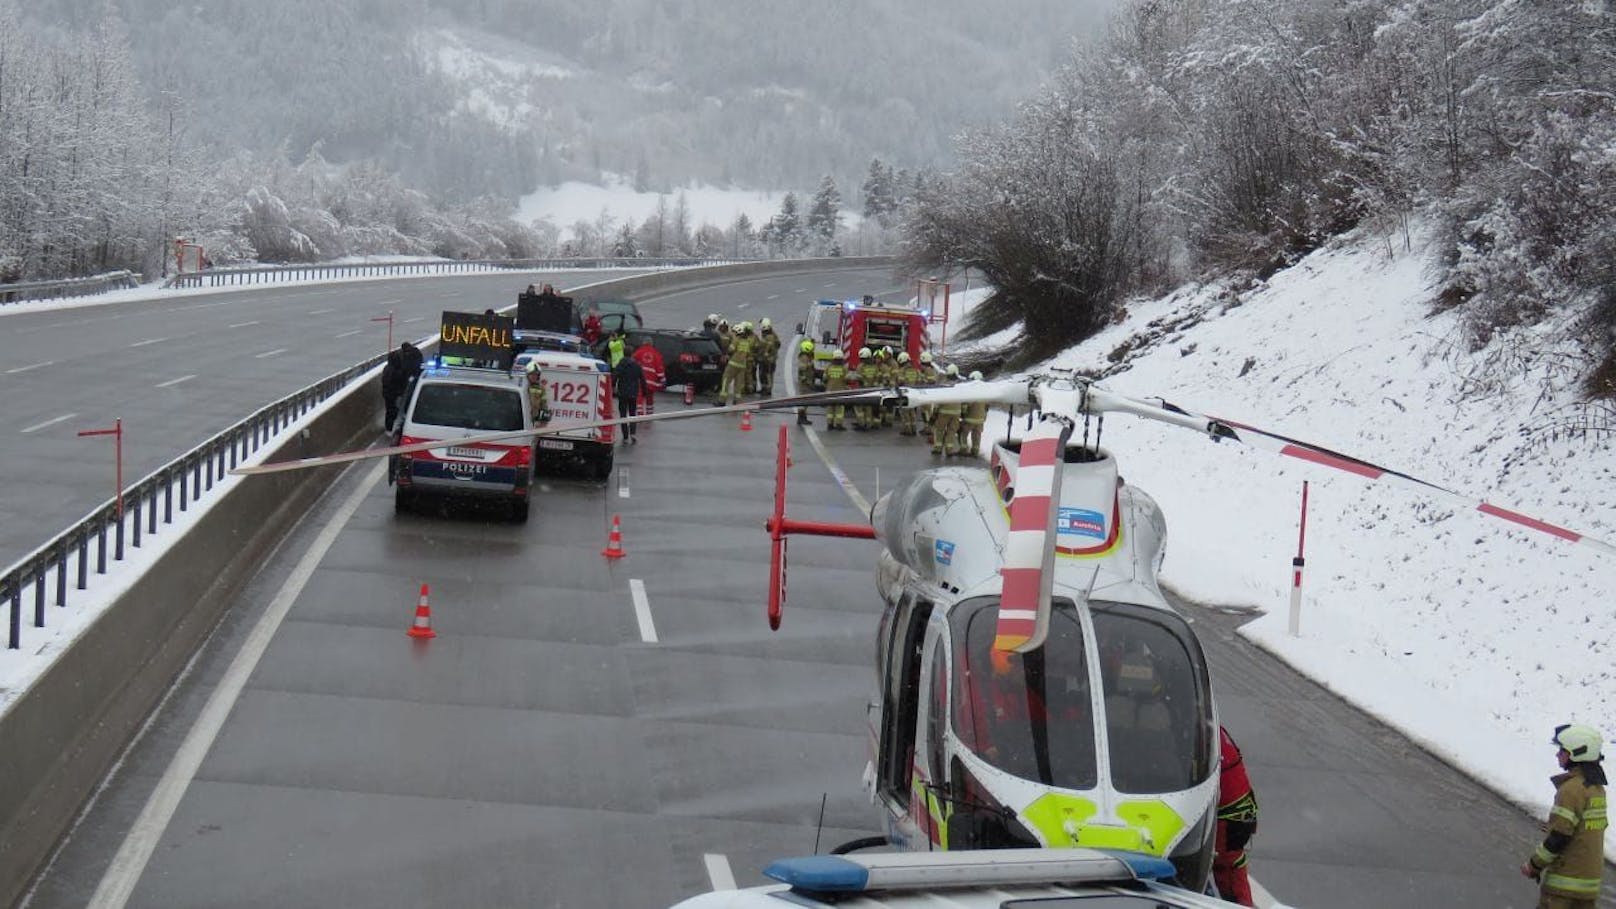 Ein schwerer Verkehrsunfall ist am Sonntag auf der A10 Tauernautobahn im Gemeindegebiet von Pfarrwerfen (S) passiert. Ein 14-Jähriger wurde verletzt.